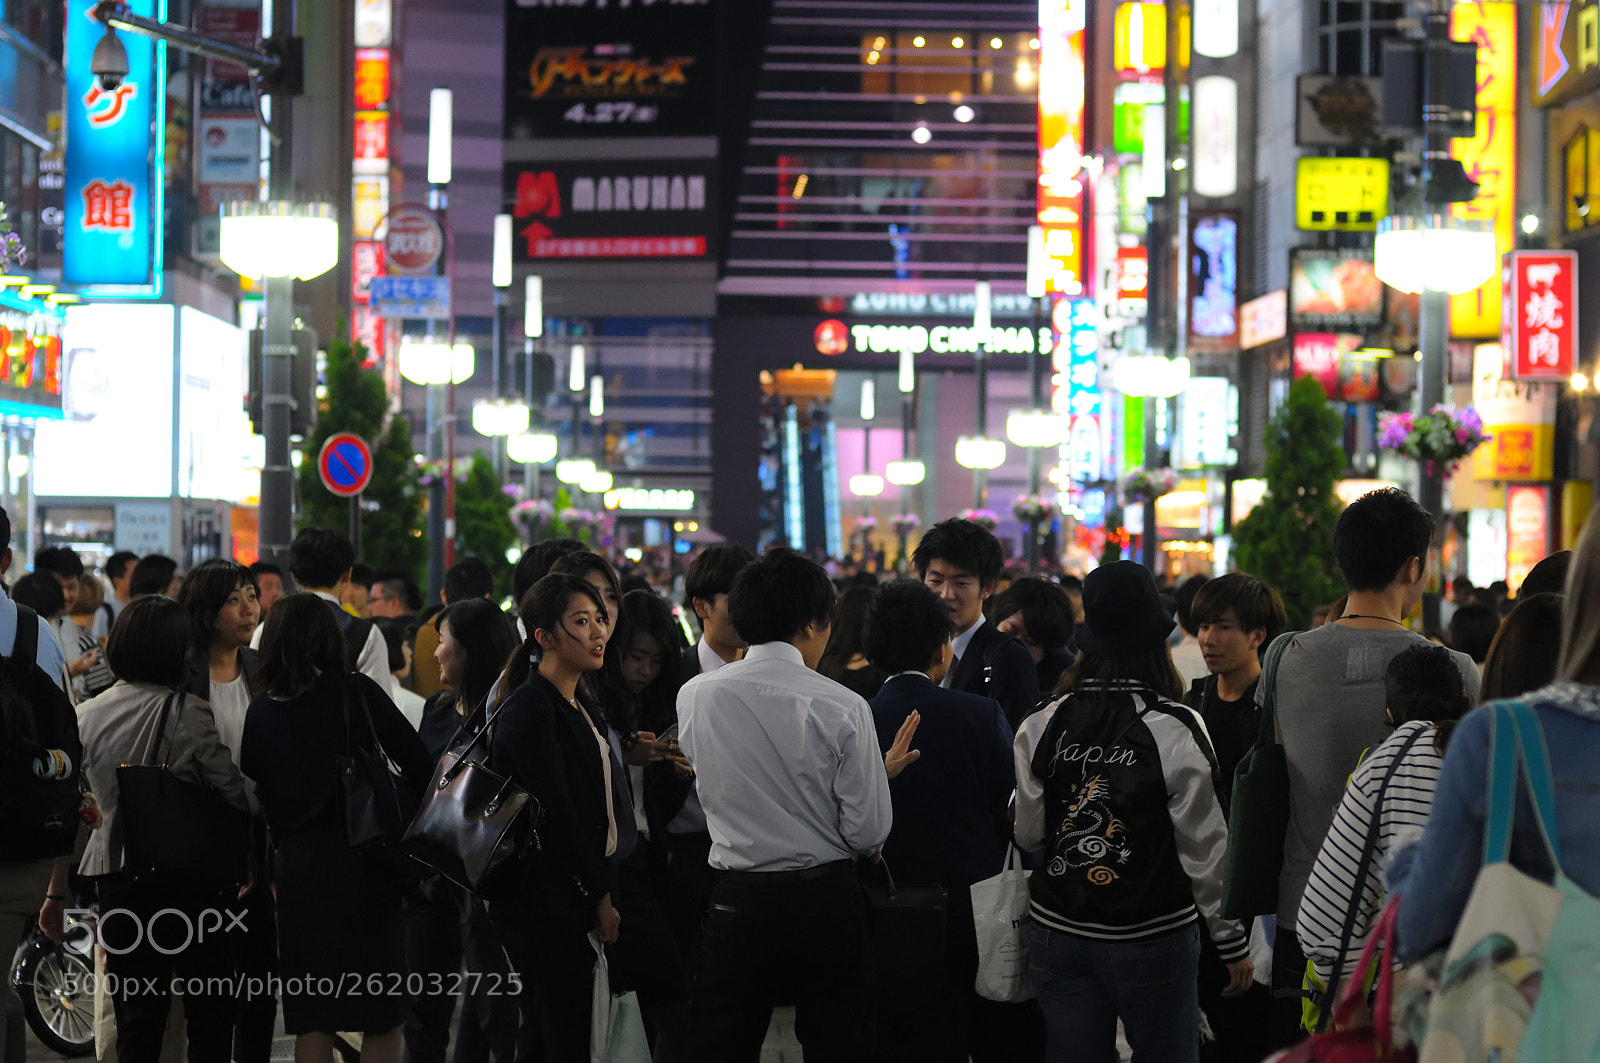 Nikon AF Nikkor 50mm F1.4D sample photo. Shinjuku night photography